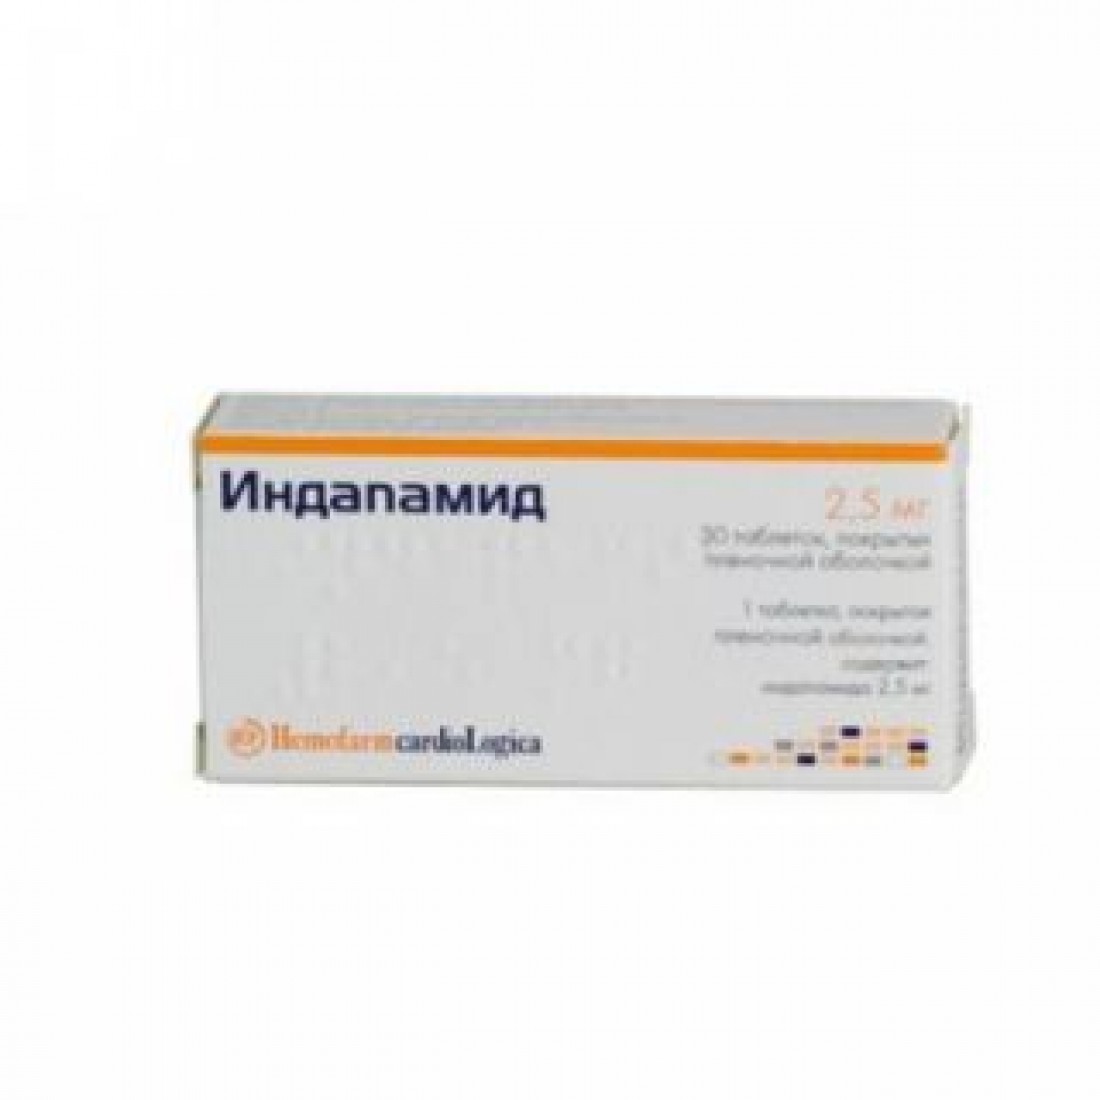 Купить индапамид 2.5 мг